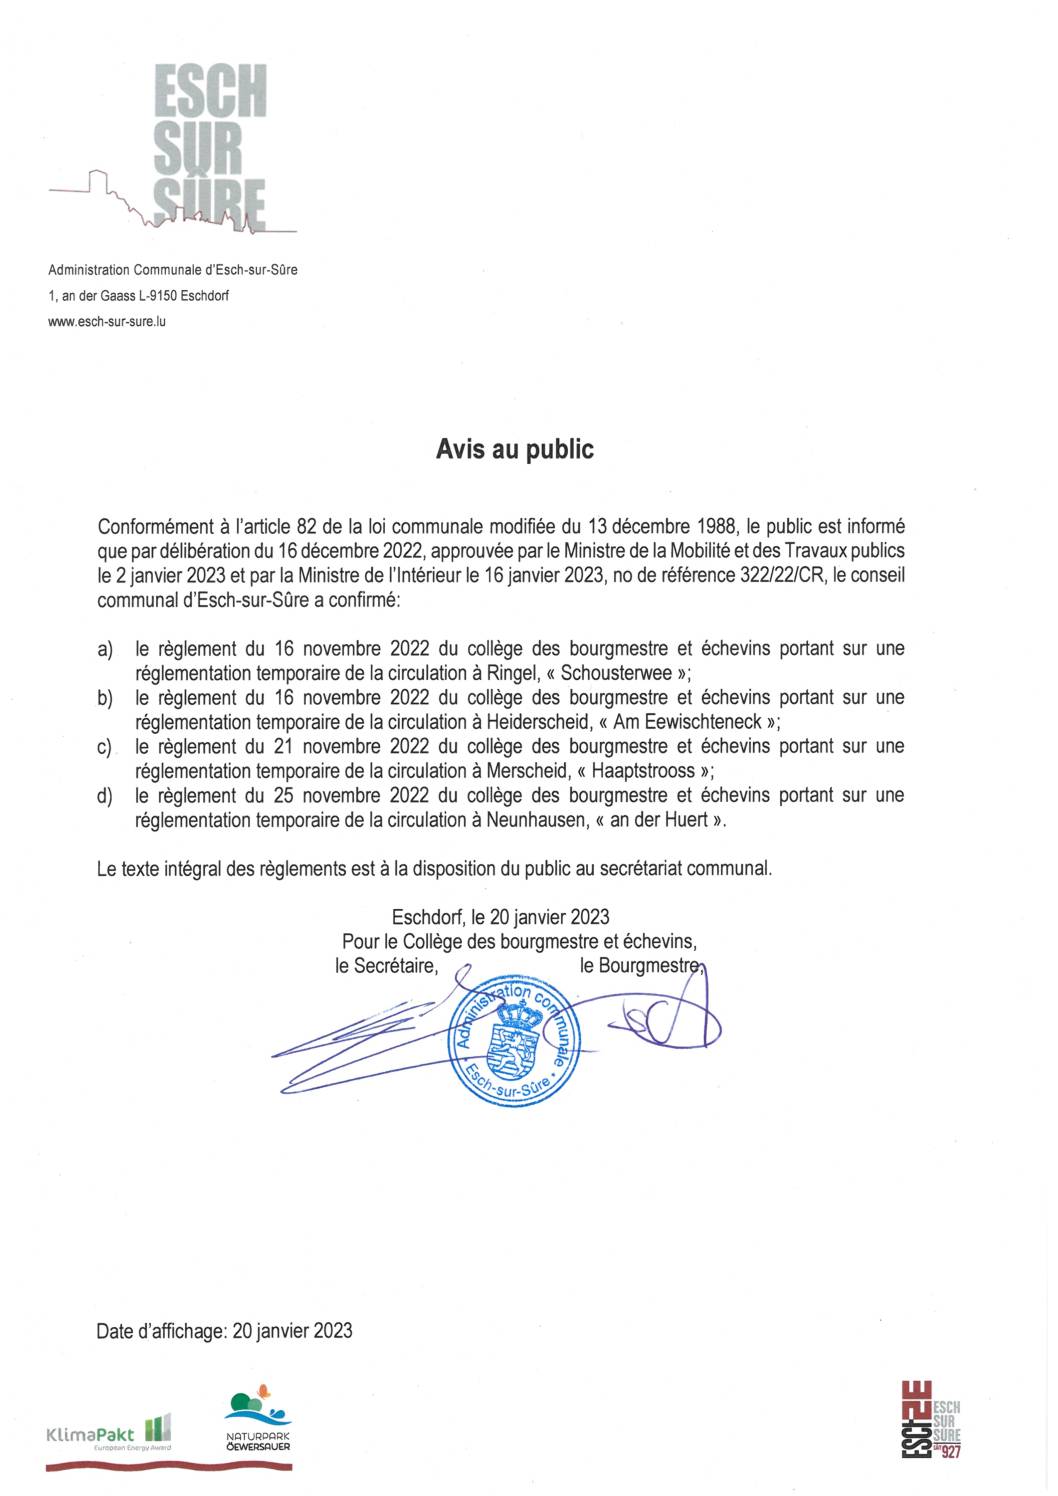 2023.01.20_Avis - Confirmation des règlements du collège des bourgmestre et échevins du 16.11.2022, 21.11.2022 et du 25.11.2022